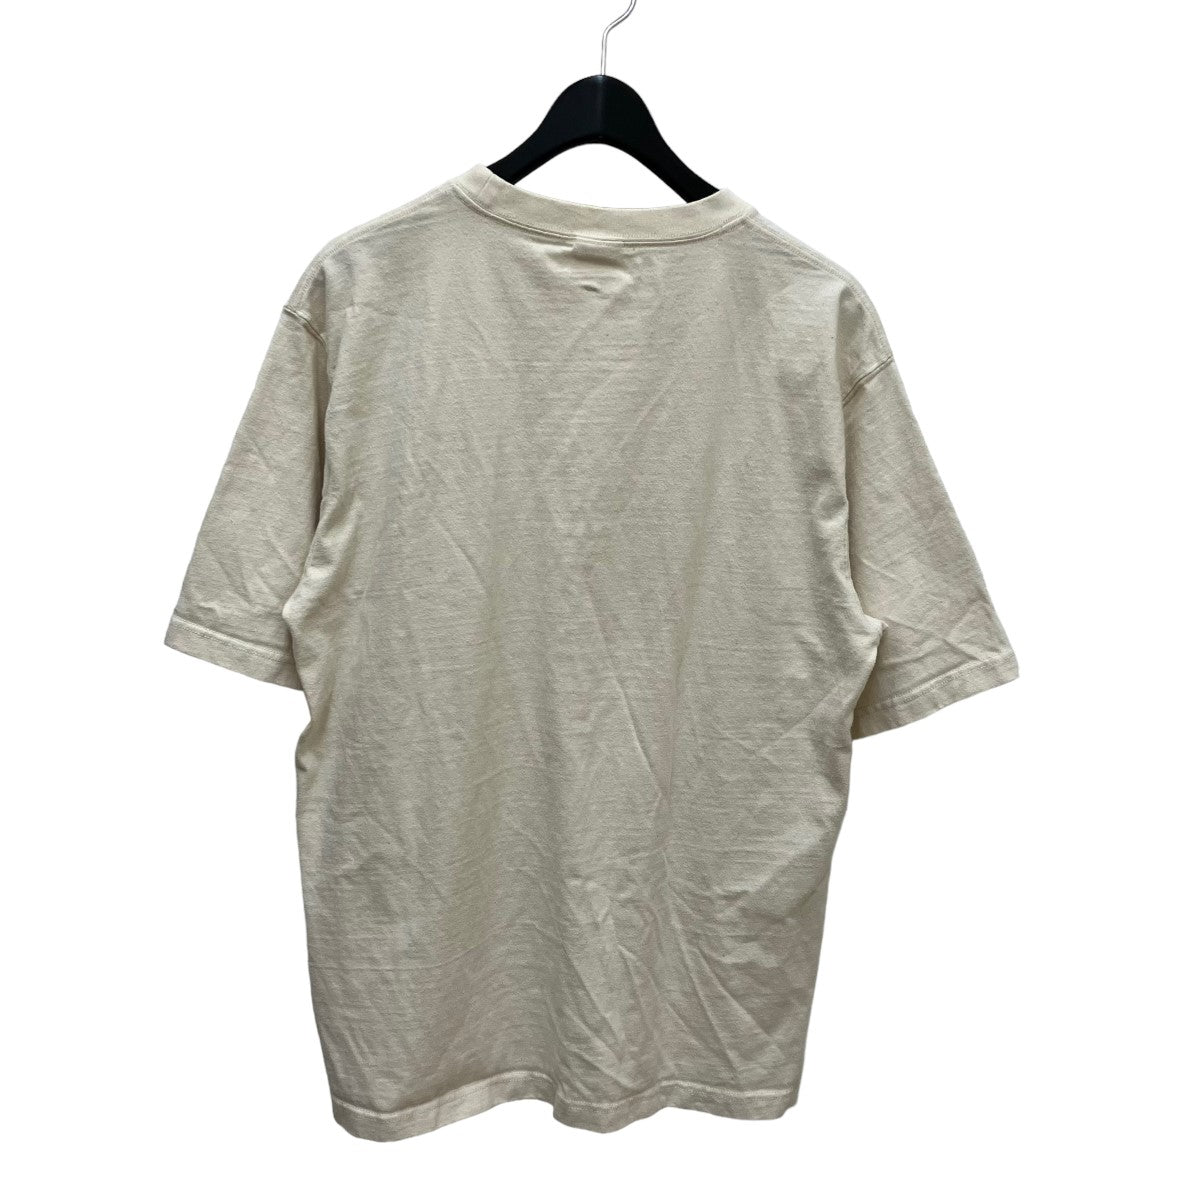 Snow peak(スノーピーク) TシャツTS 22SU401 イエロー サイズ:L メンズ Tシャツ・カットソー 中古・古着